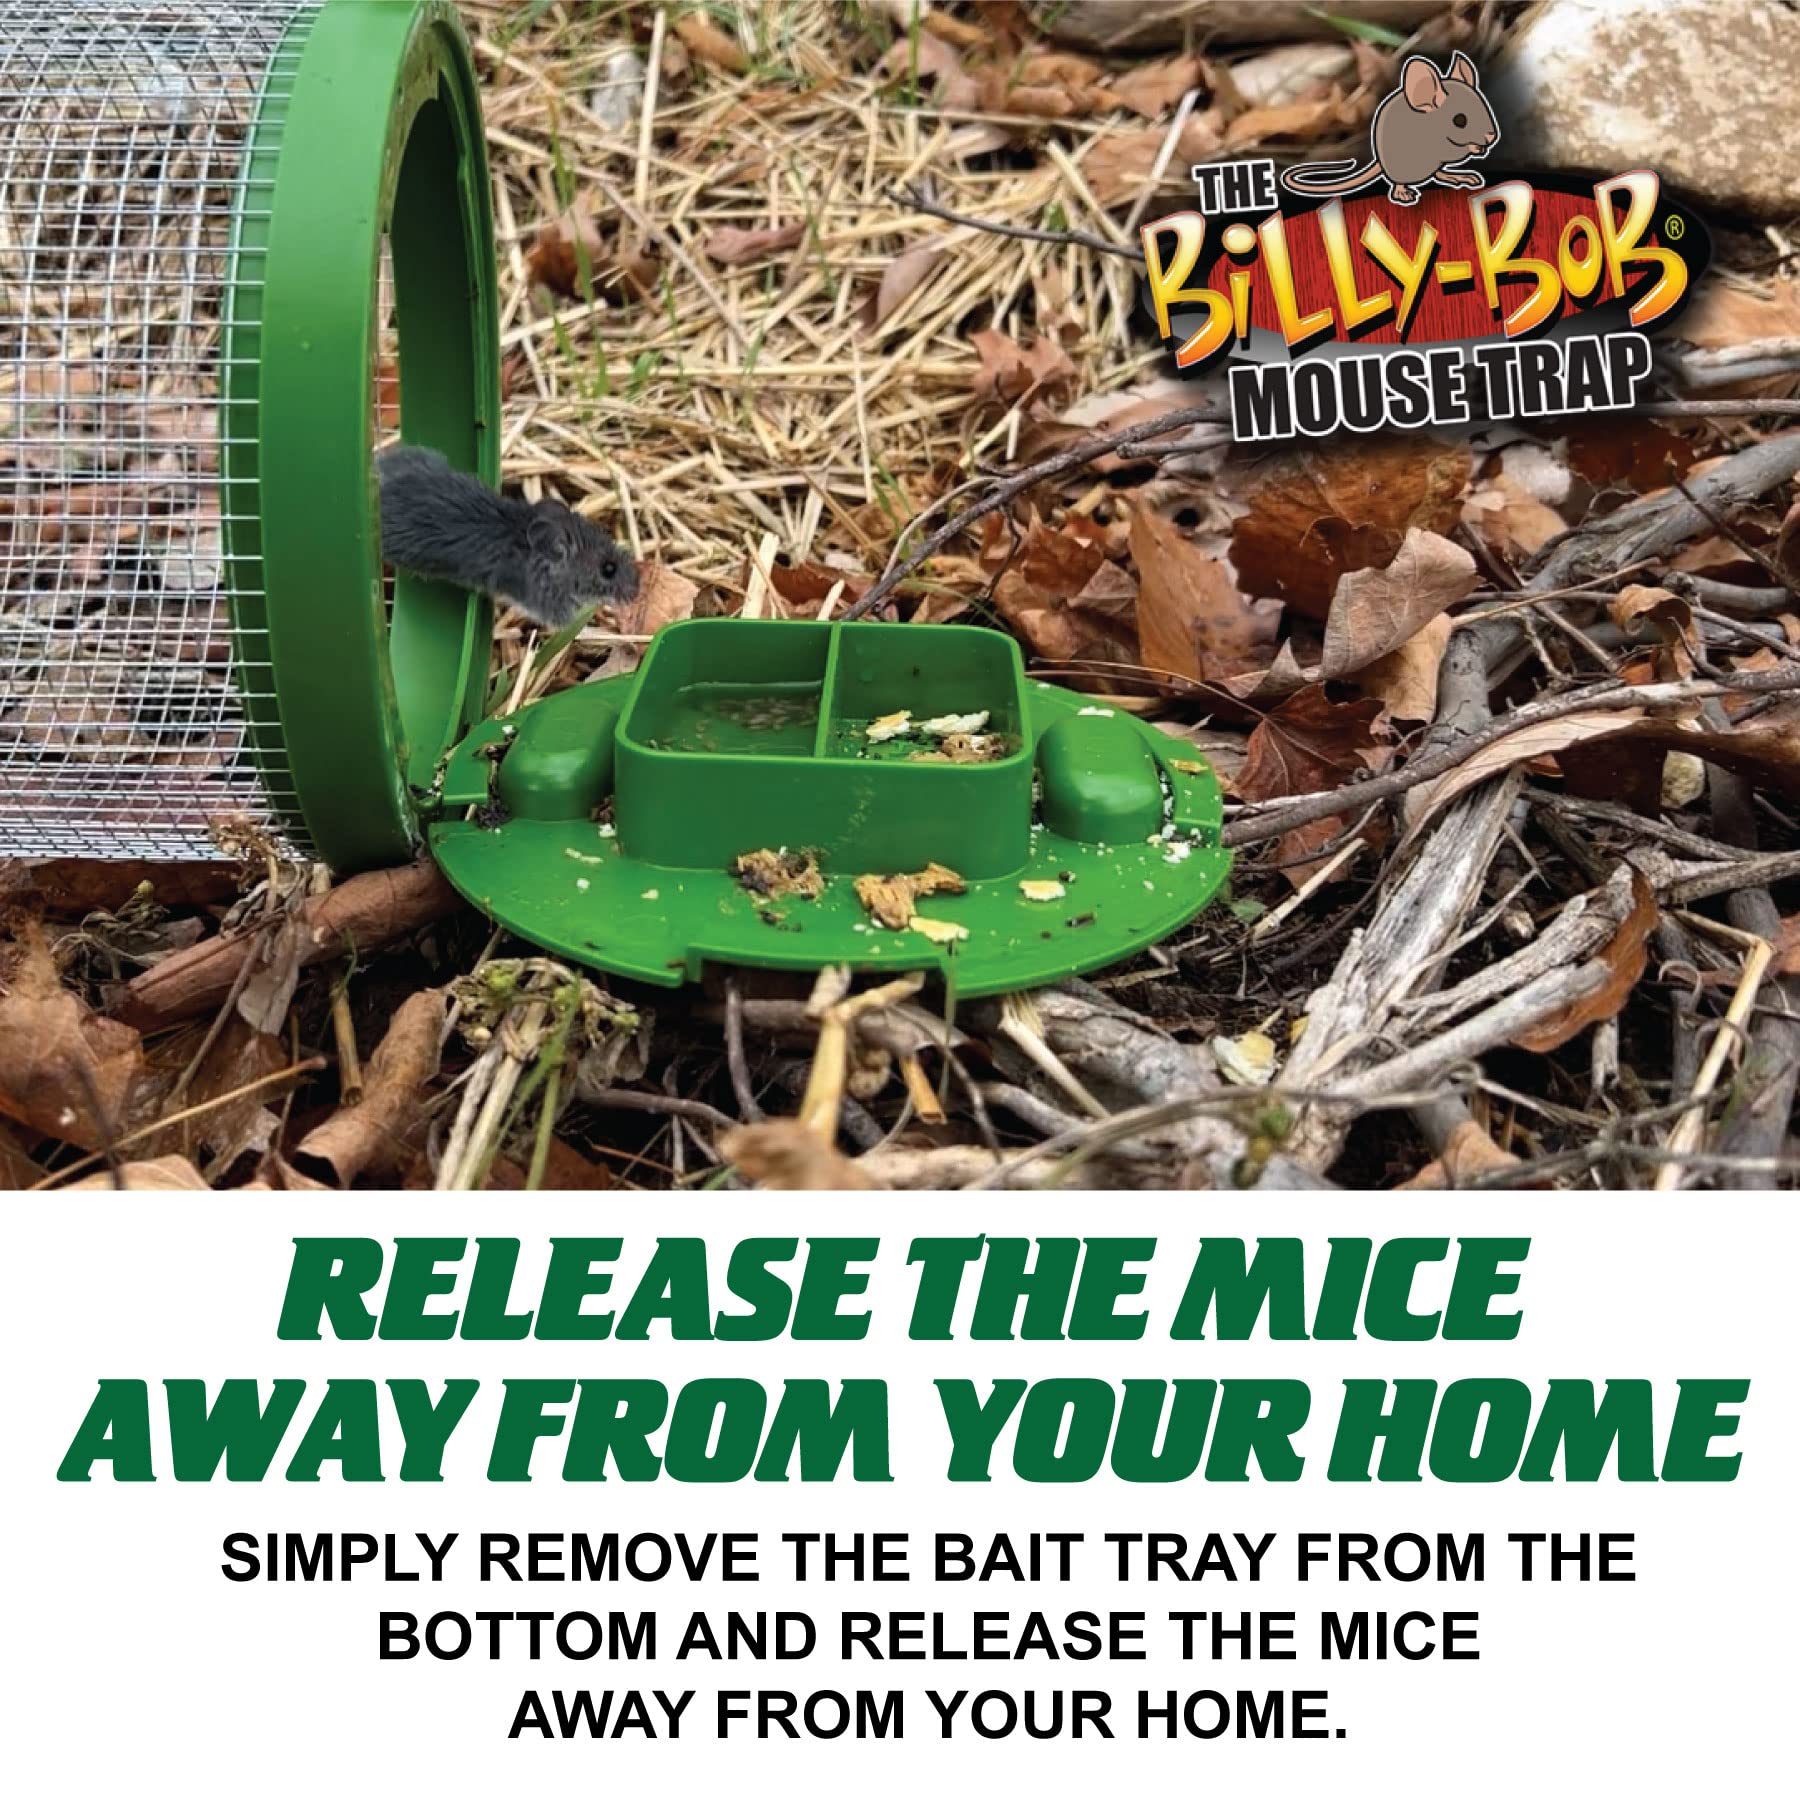 Billy Bob Multi-Catch Mouse Trap